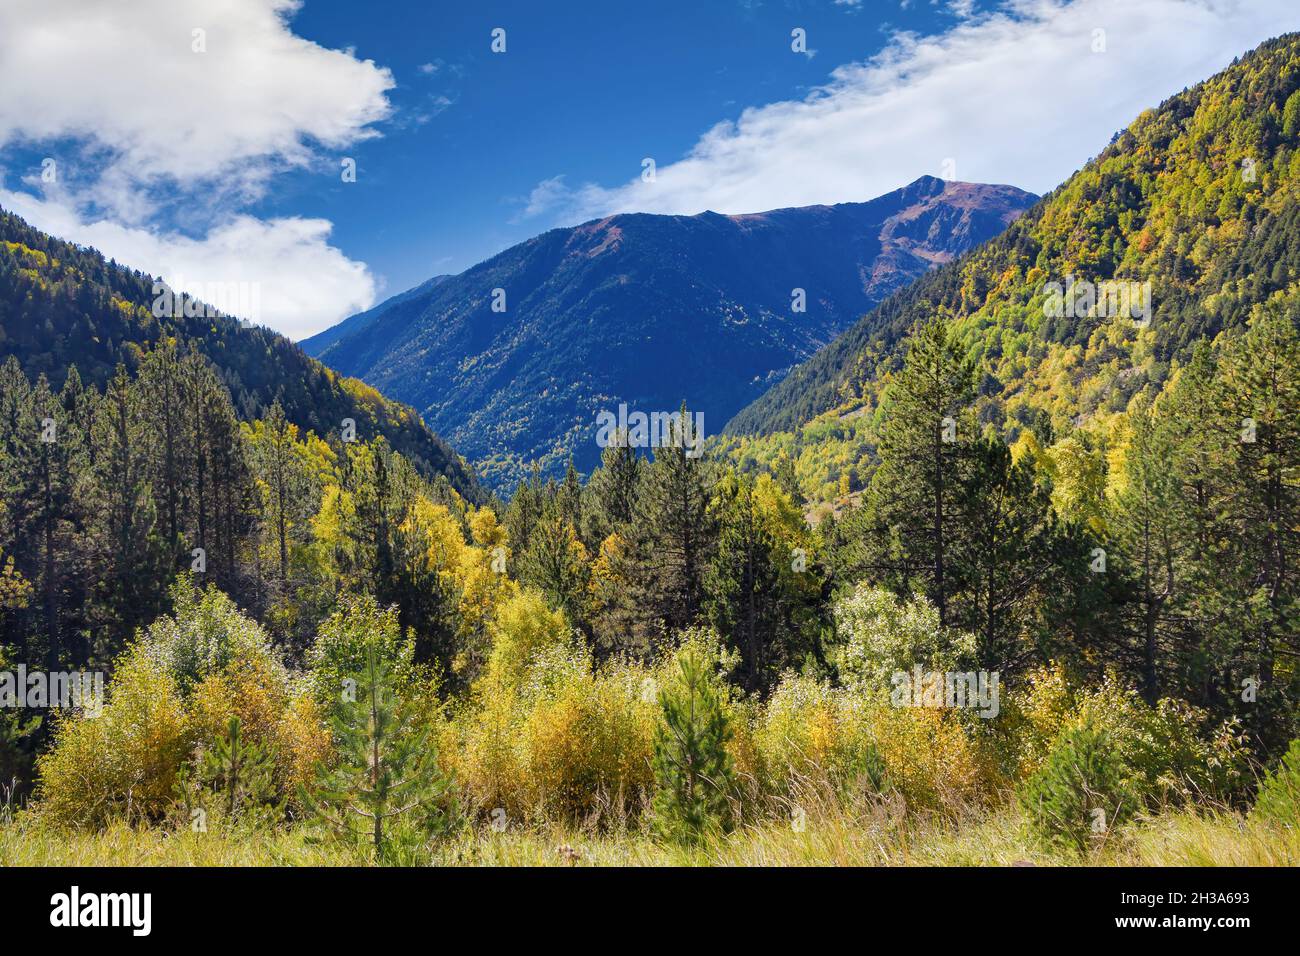 Blick auf einen Wald mit hohen Bergen im Hintergrund, wo die Büsche und Bäume Ockerfarben in der Mitte des Herbstes präsentieren Stockfoto